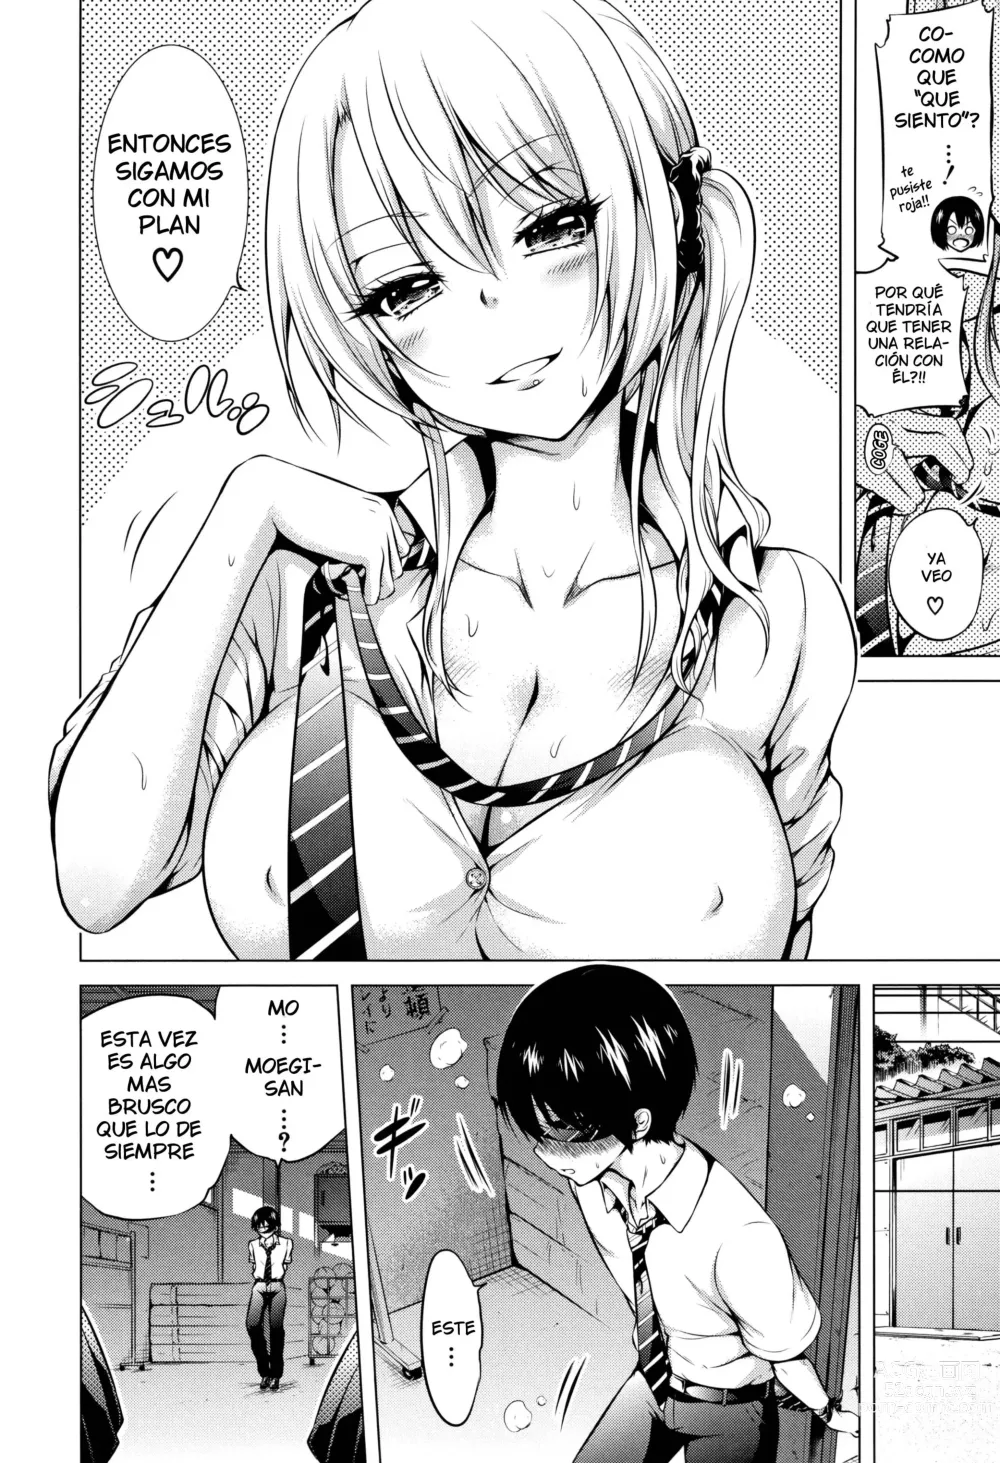 Page 8 of manga Hinagiku Virgin Lost Club e Youkoso Cap.3 - Bienvenidos al club de Hinagiku para perder la virginidad Cap.3 (decensored)